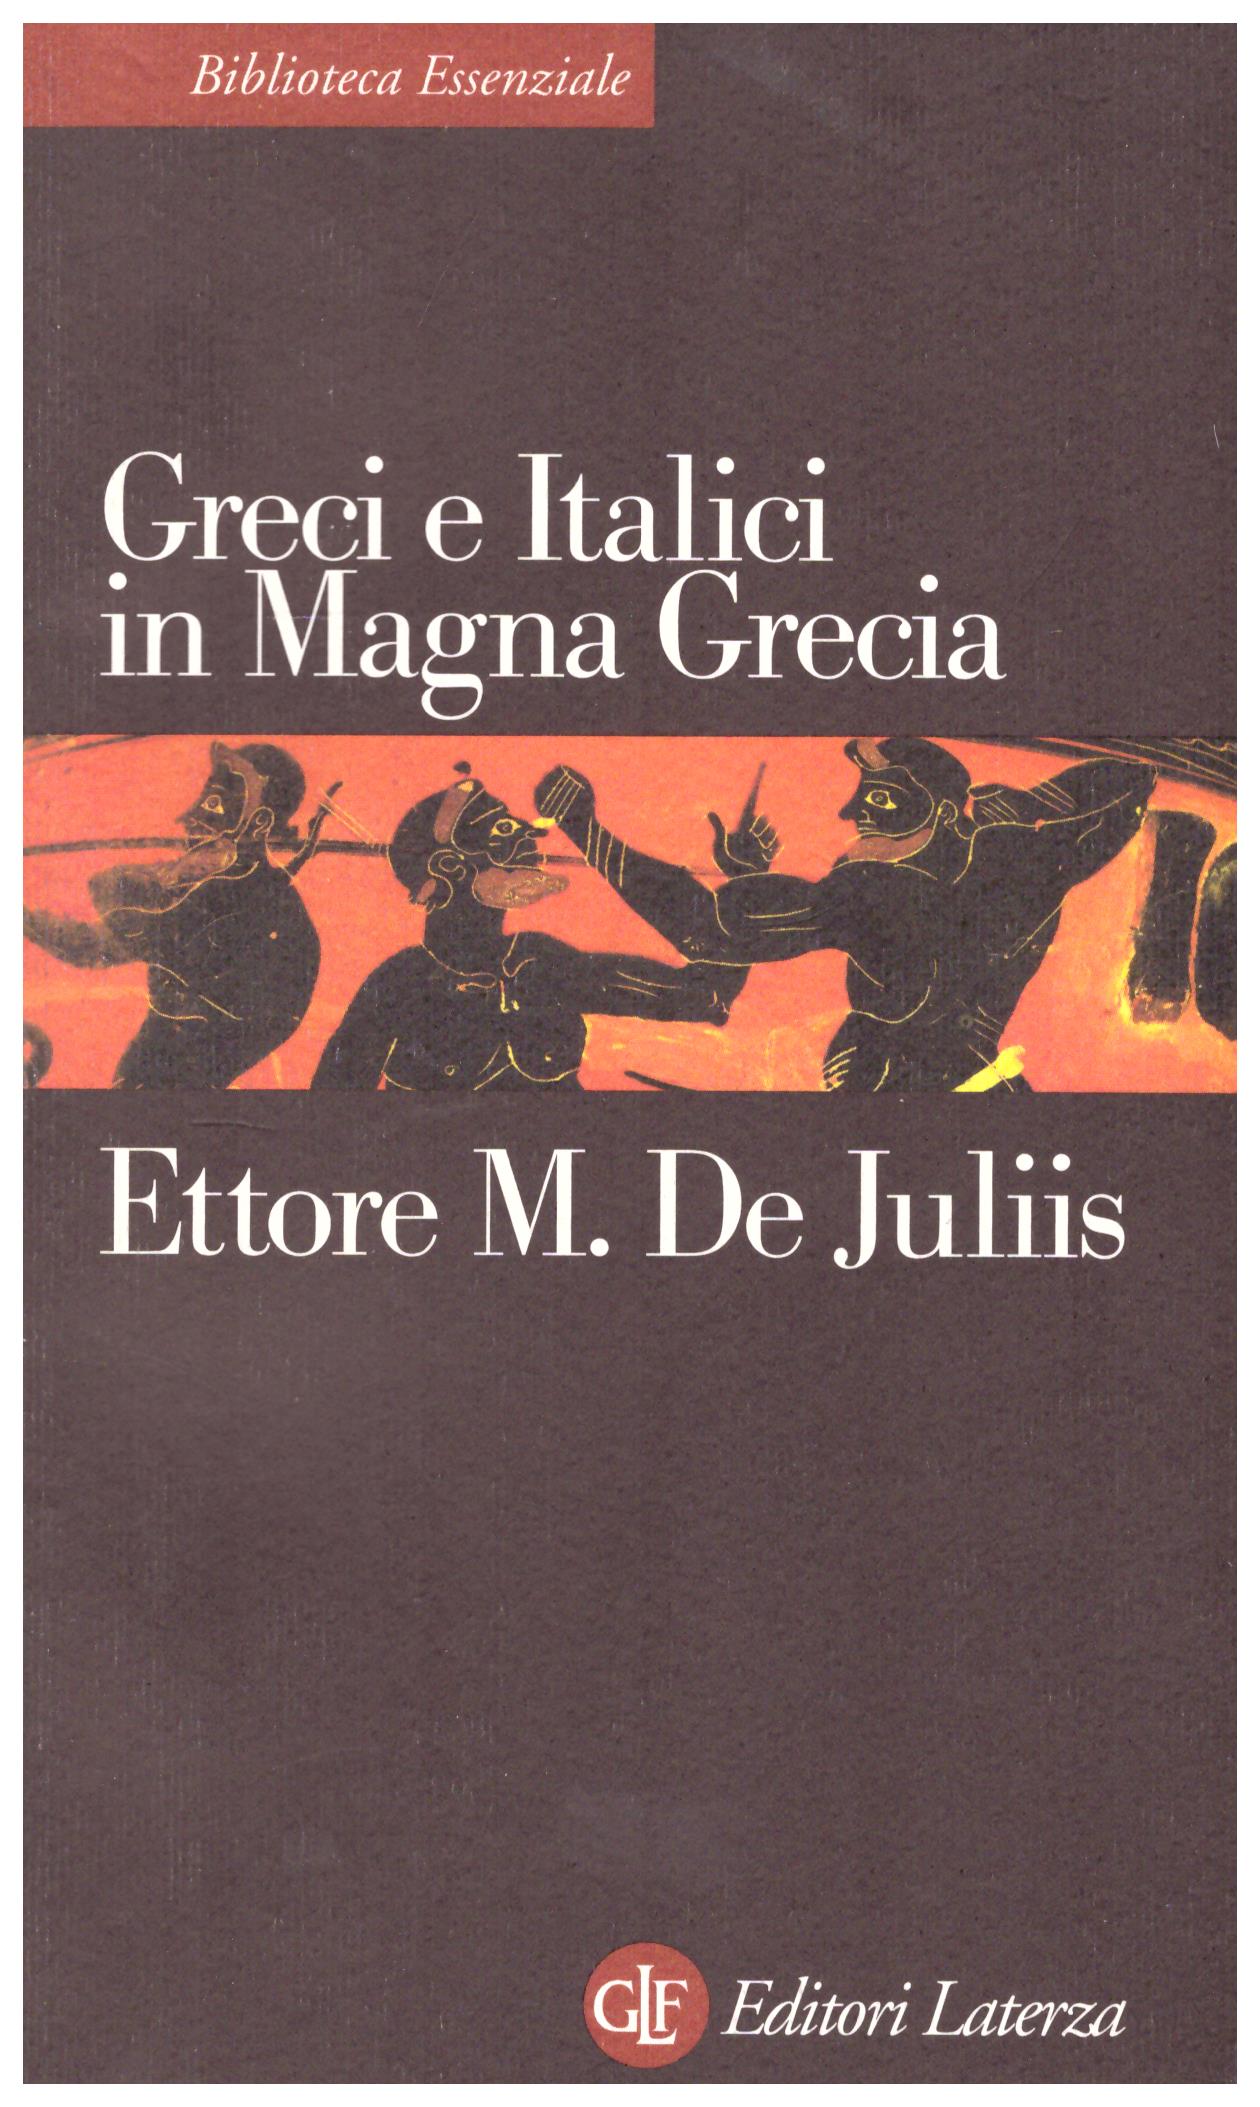 Greci e Italici in Magna Grecia